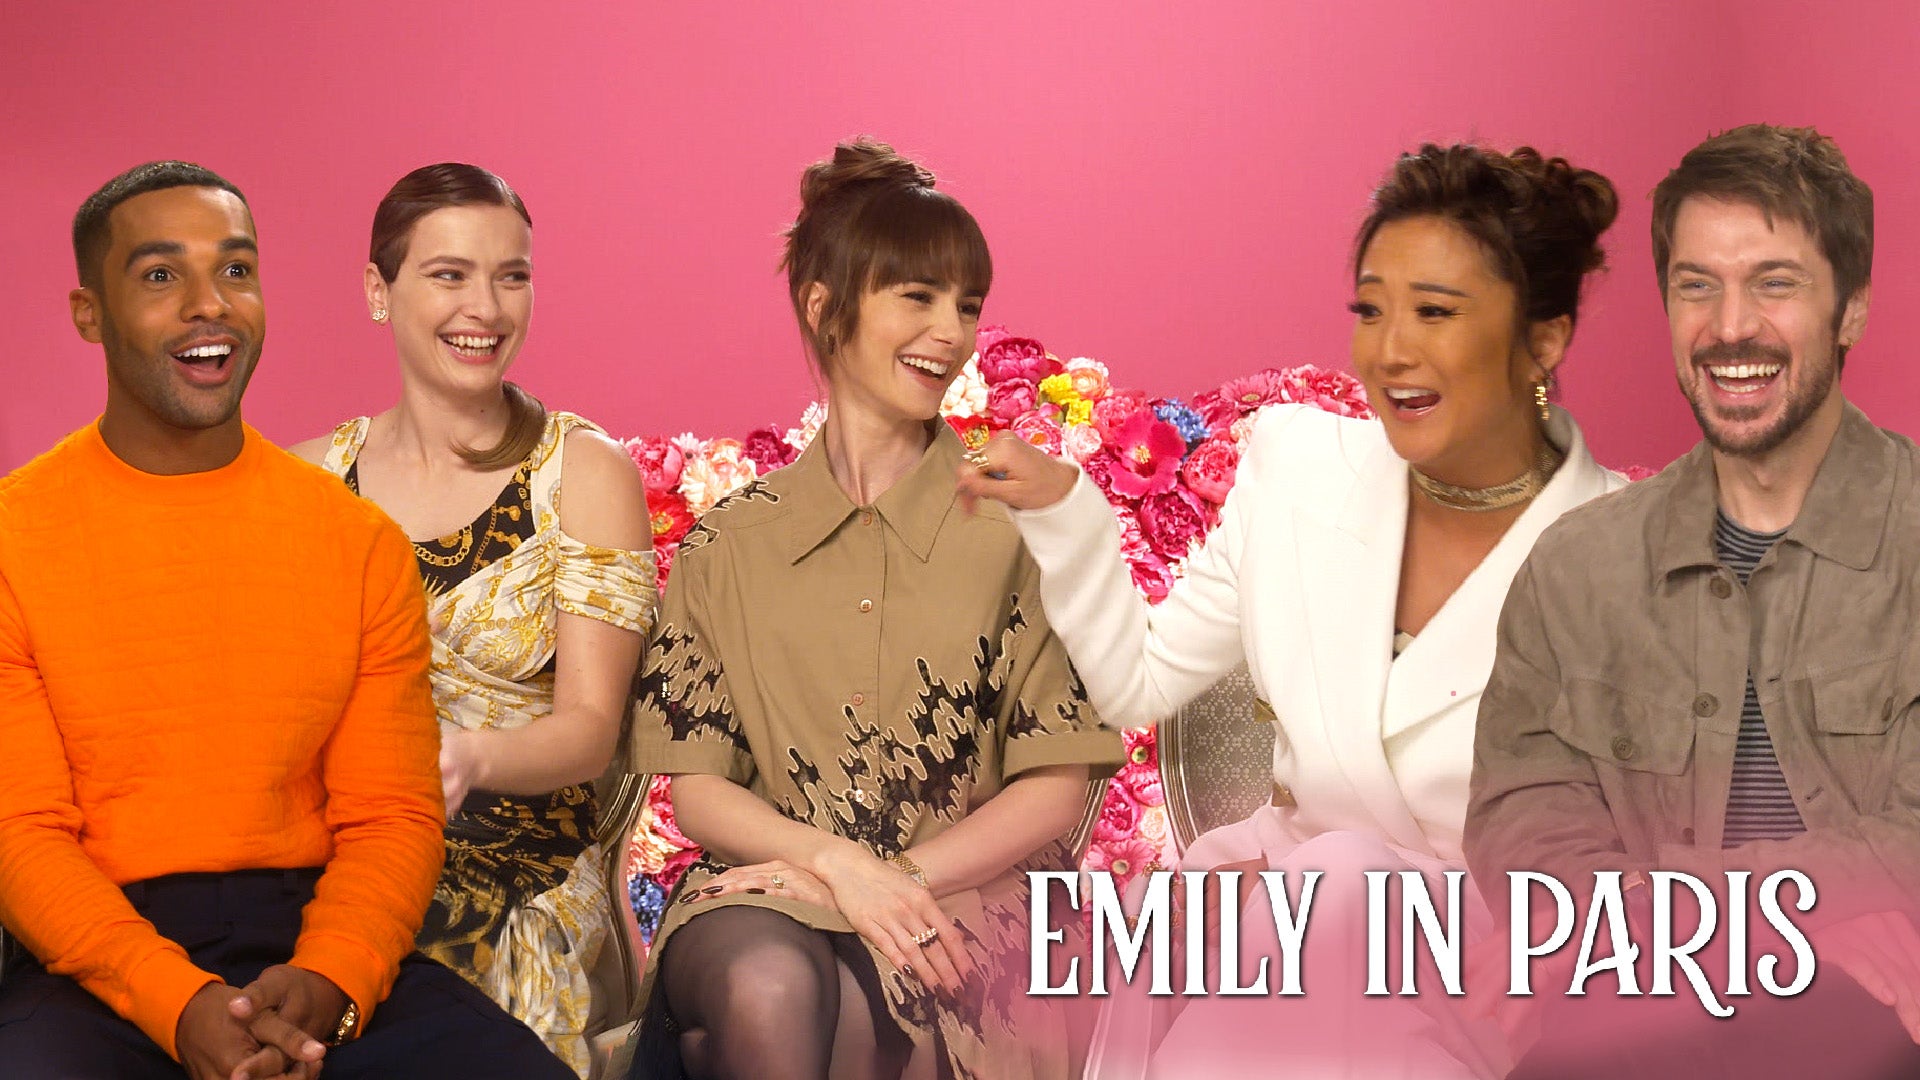 Emily in Paris' Stars Ashley Park & Camille Razat Reunite In Paris